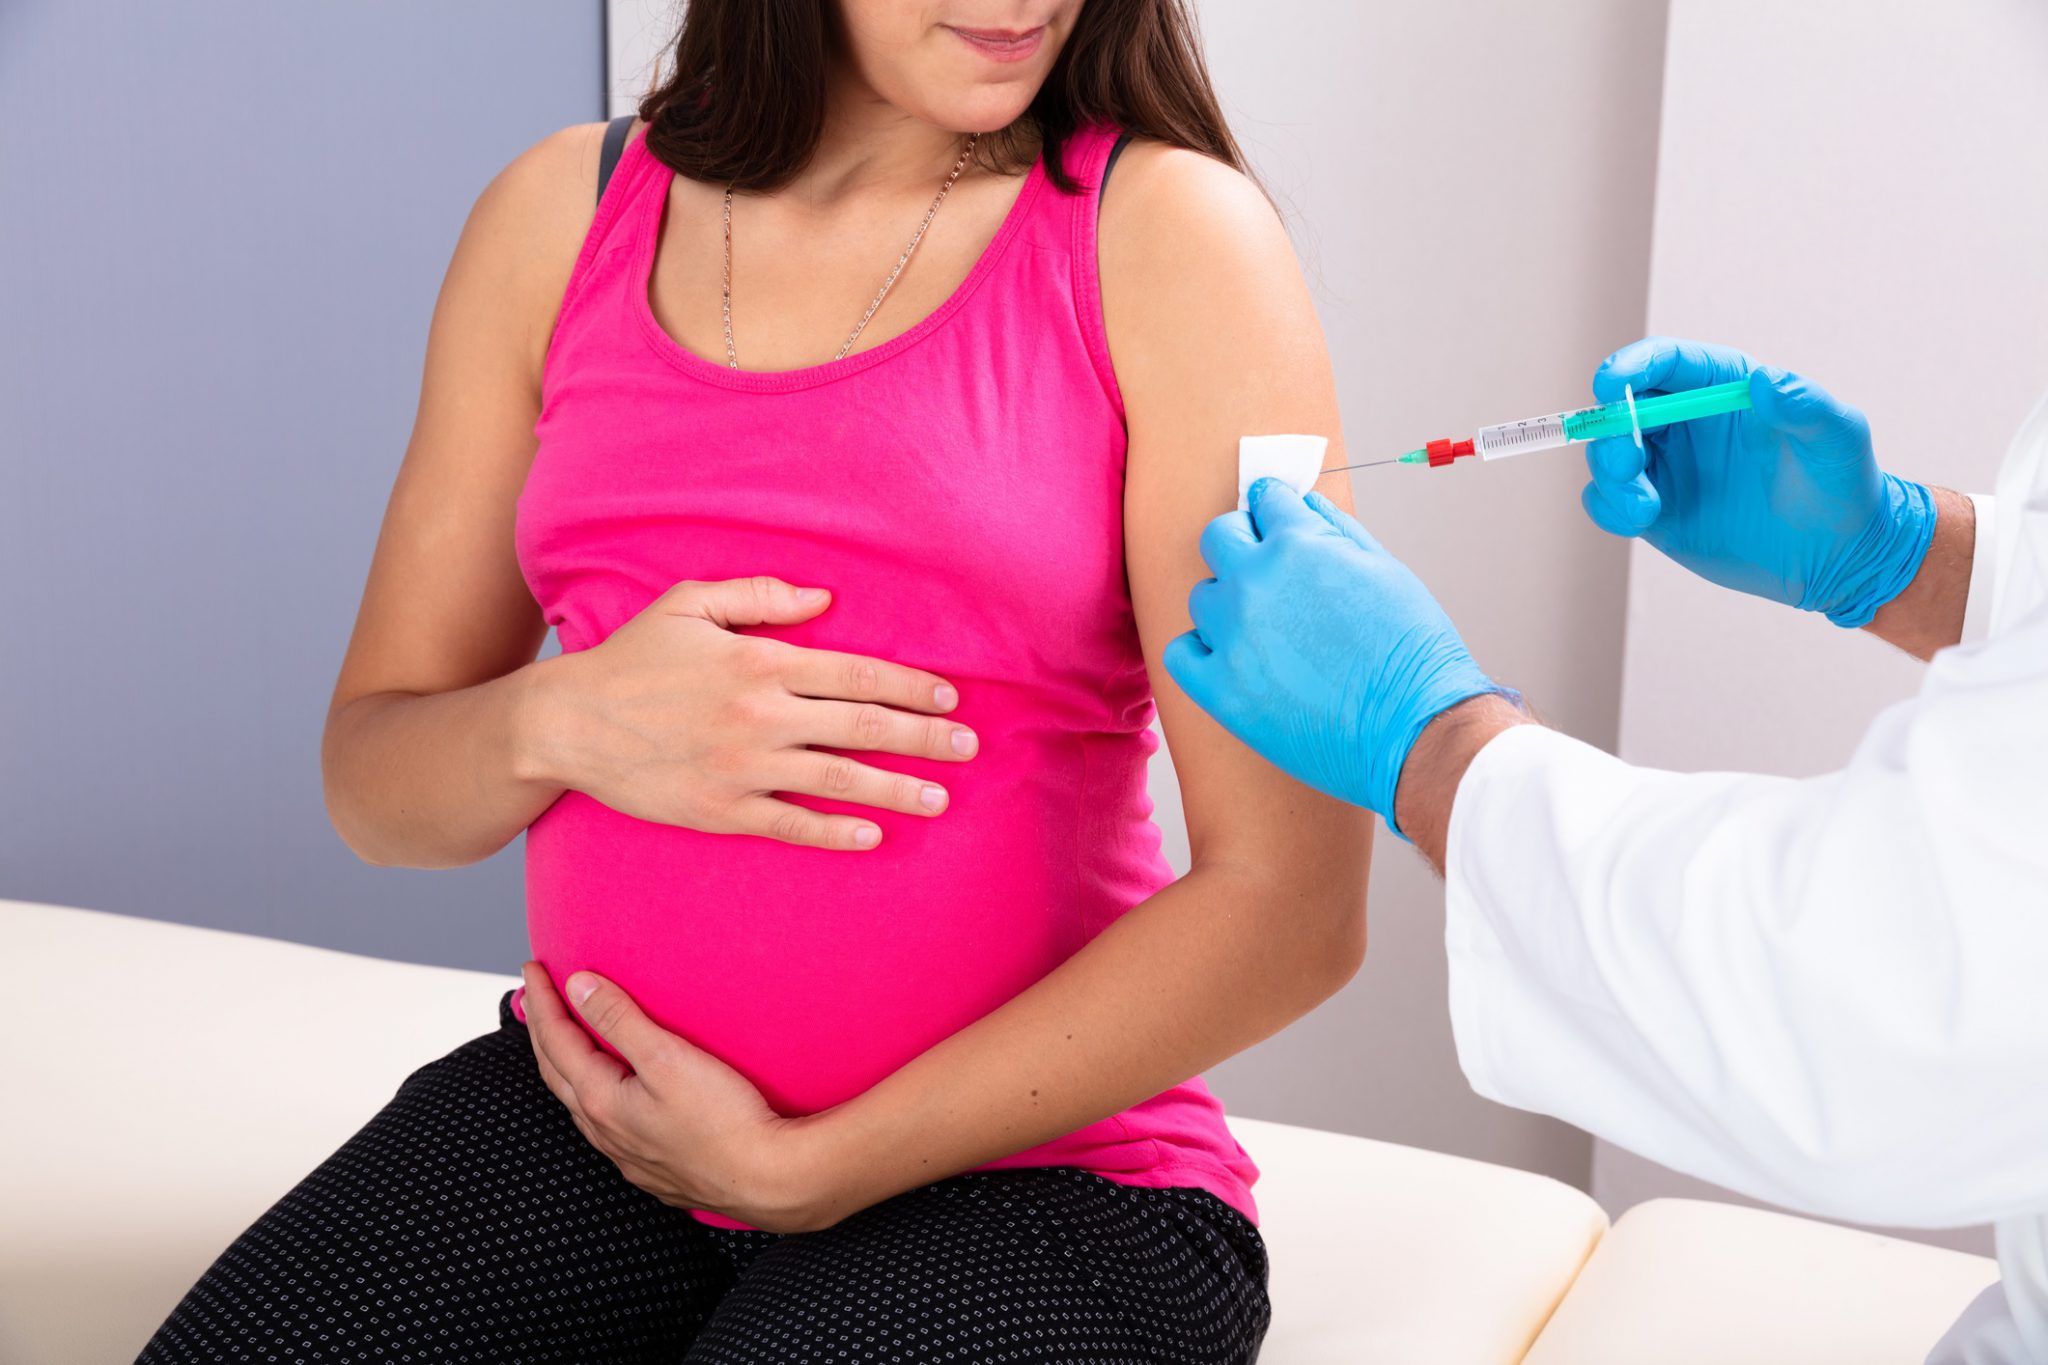 Mulher grávida tomando injeção: gestantes podem tomar vacina contra o Covid-19?